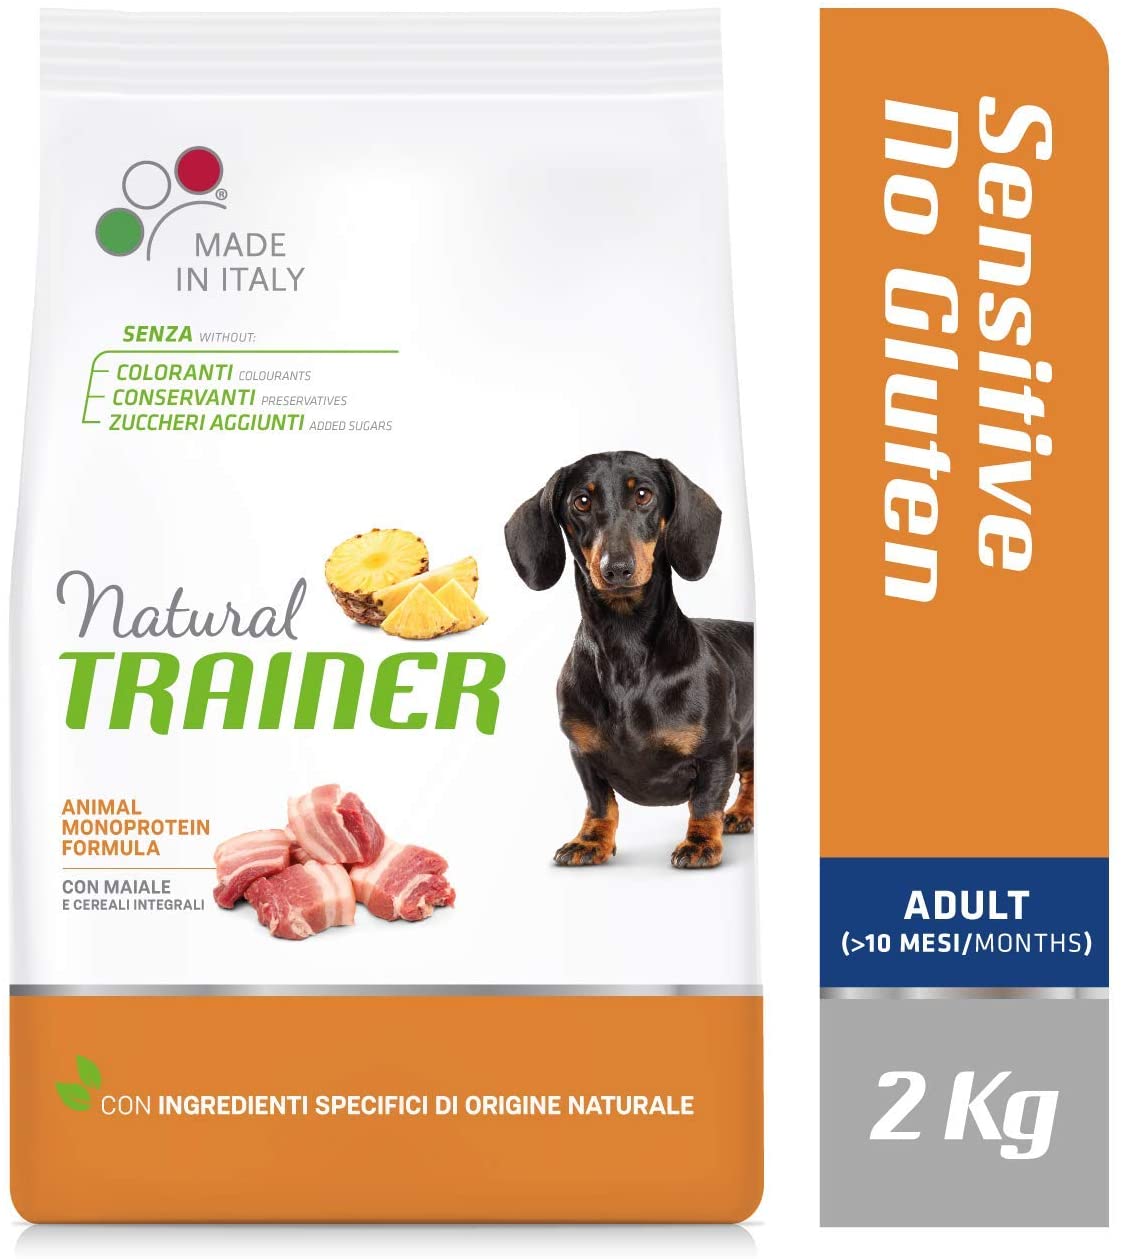 Natural Trainer Sensitive No Gluten - Cibo per Cani Small&Toy Adult con Agnello e Cereali Integrali 2kg